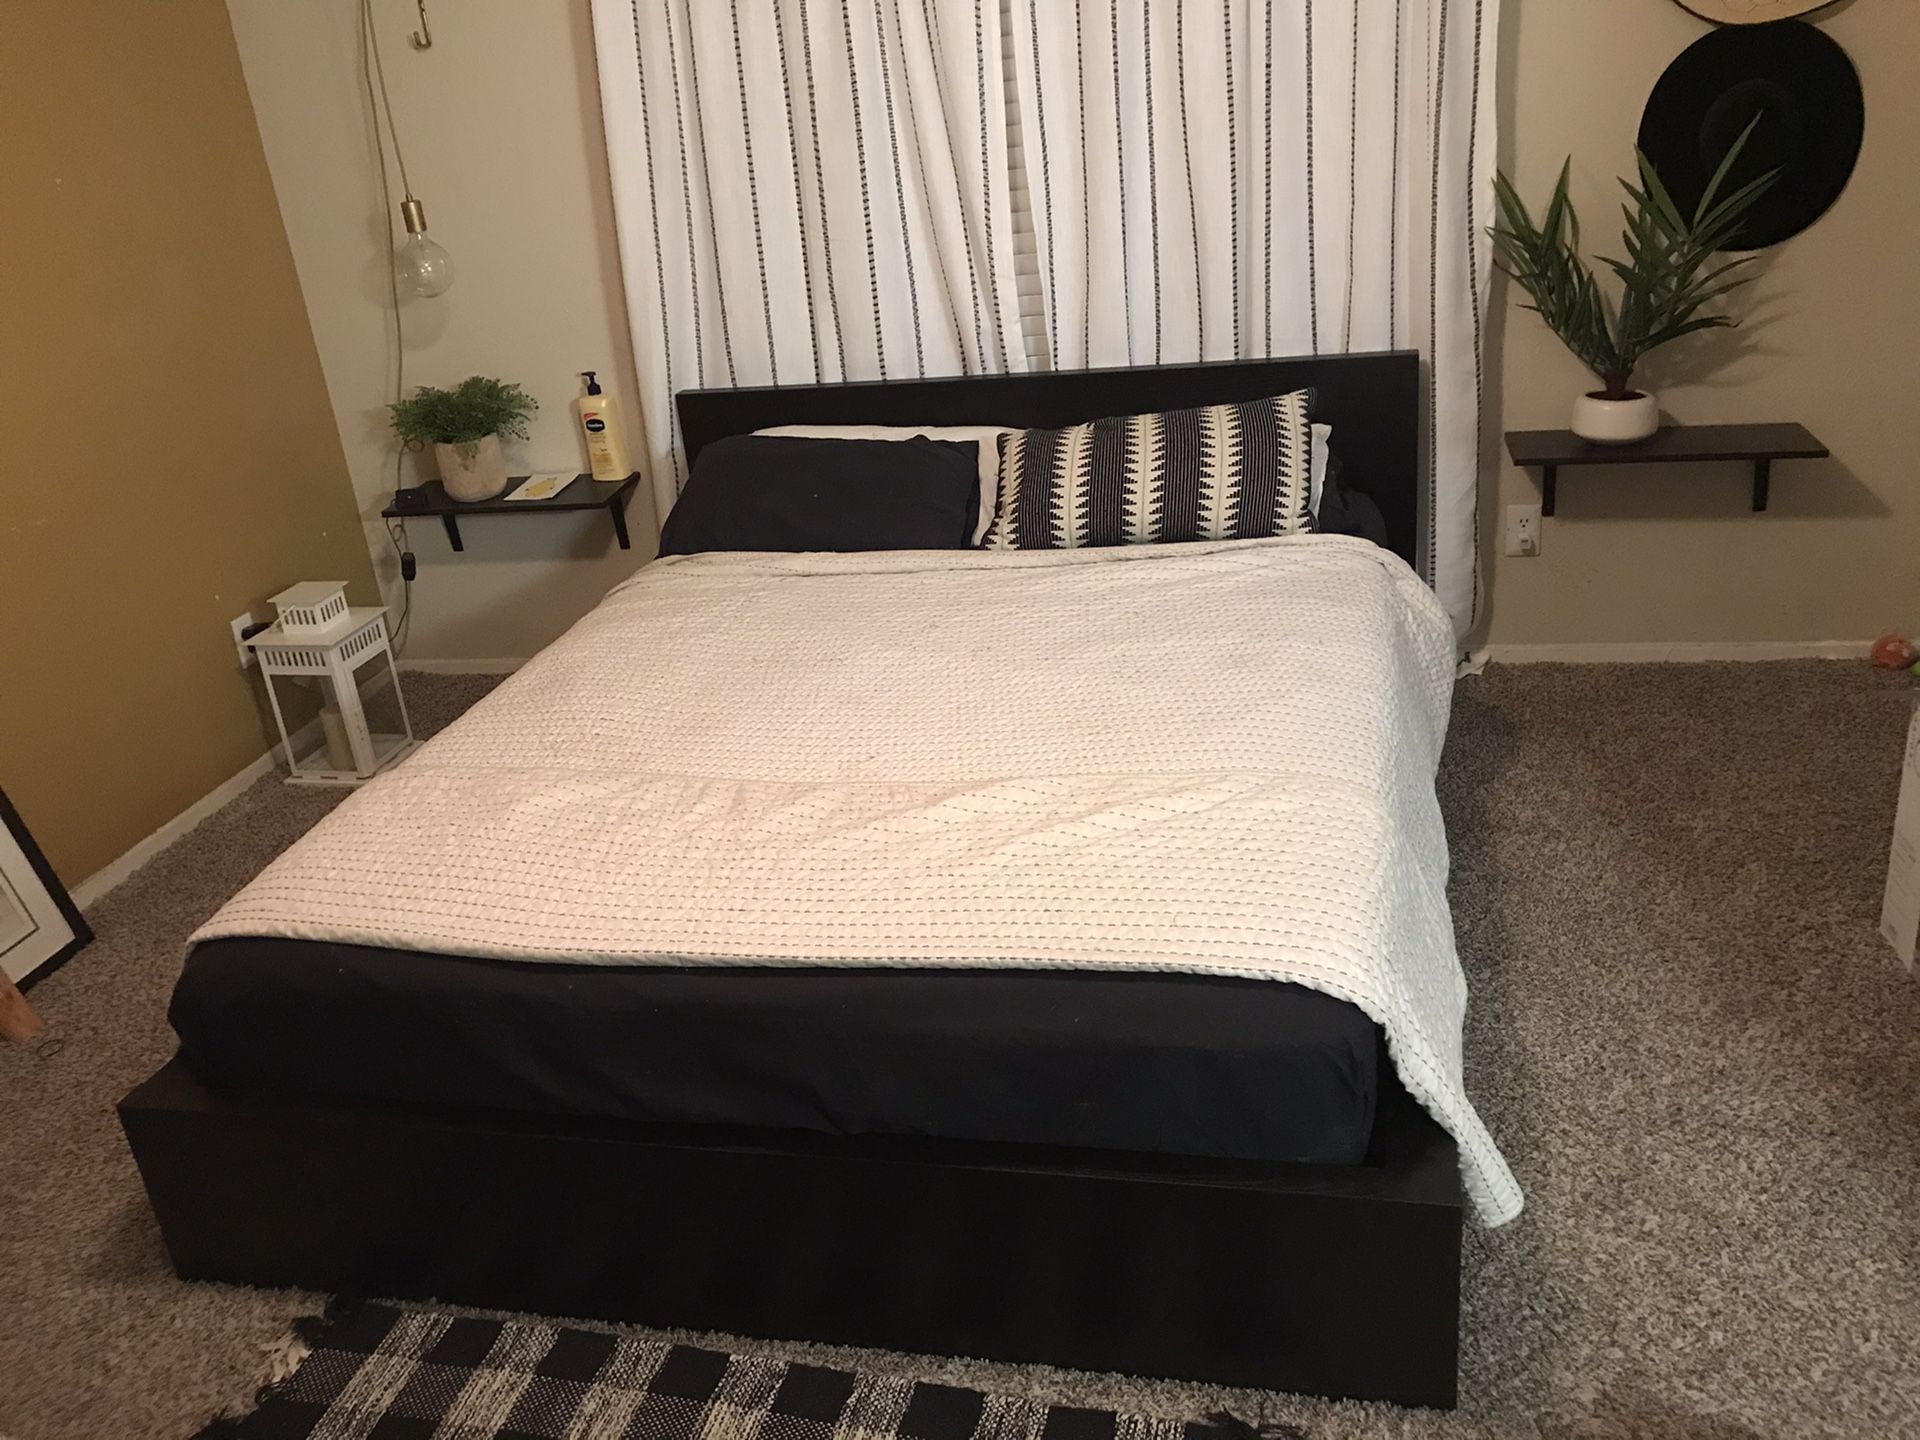 Queen bed frame ( no mattress )